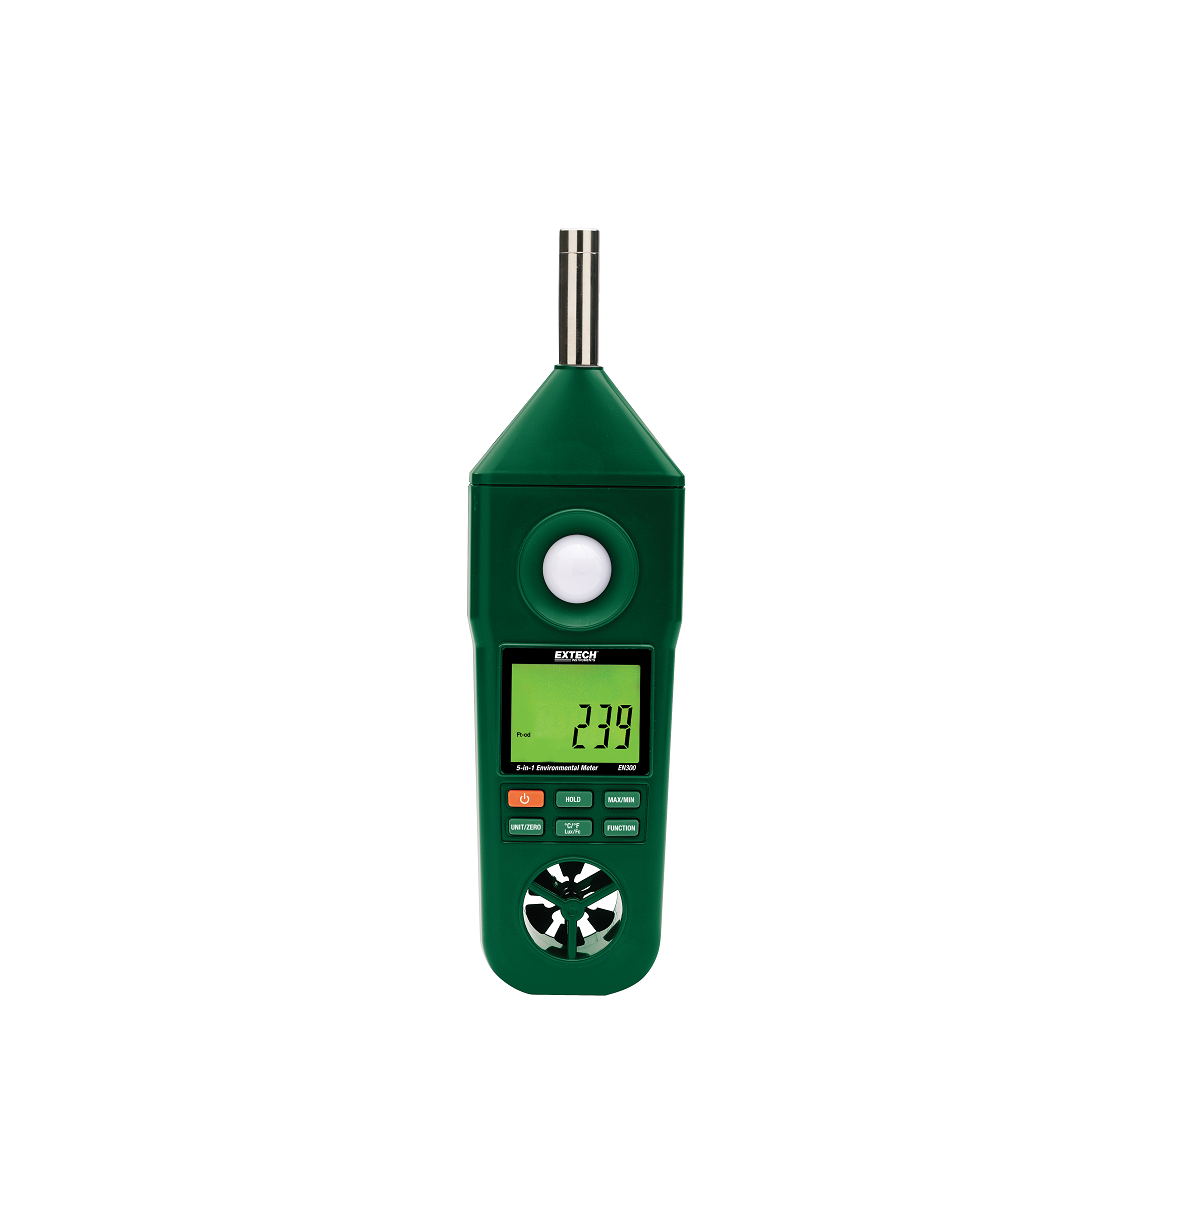 Supco EM5 5-Parameter Environmental Meter